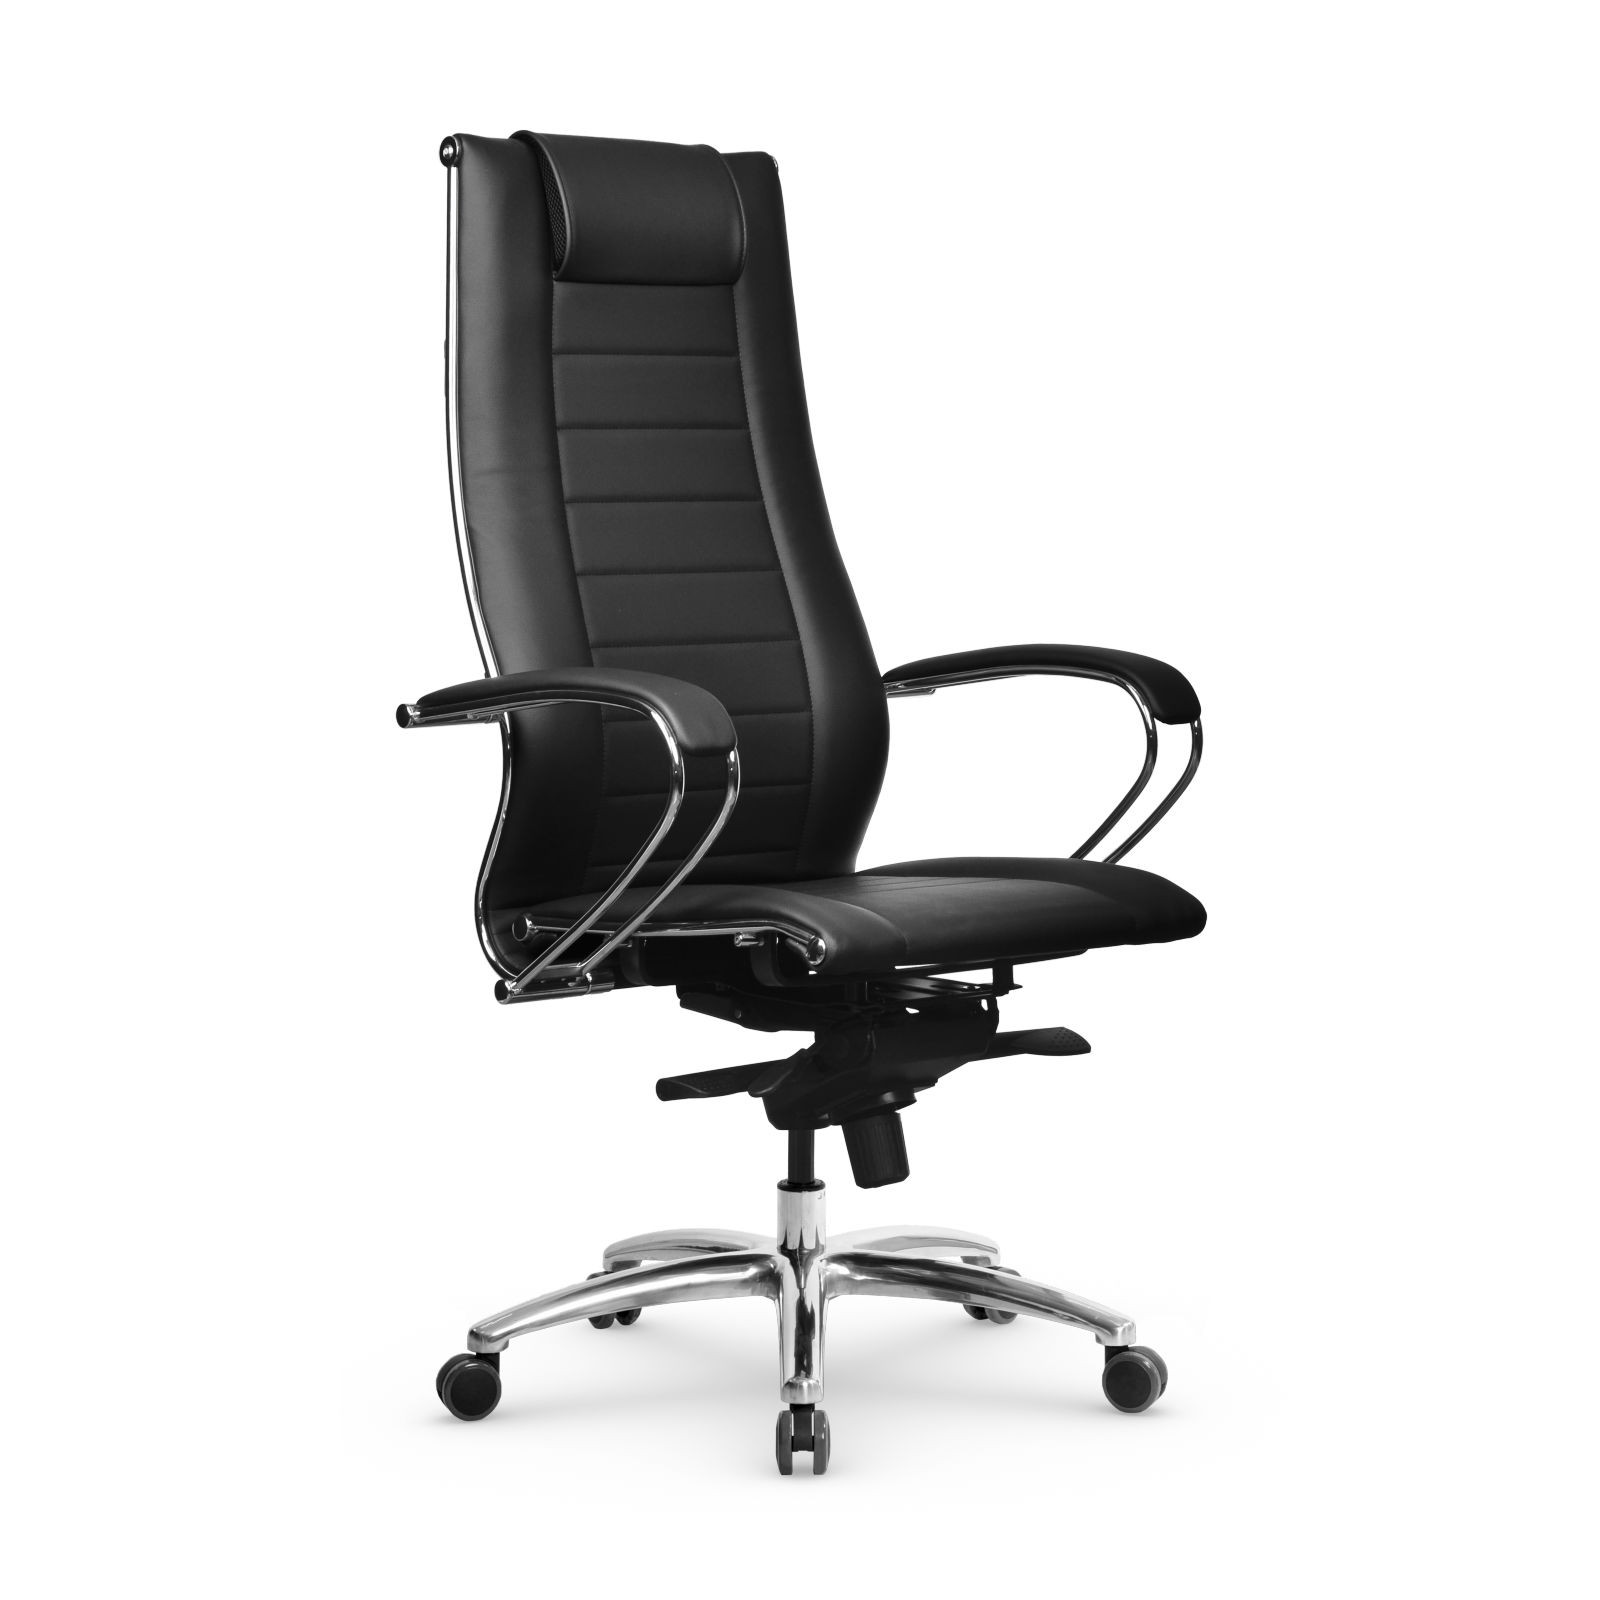 Офисное компьютерное кресло Metta с механизмом качания и спинкой из сетки / компьютерное кресло / кресло руководителя цвет Чёрный